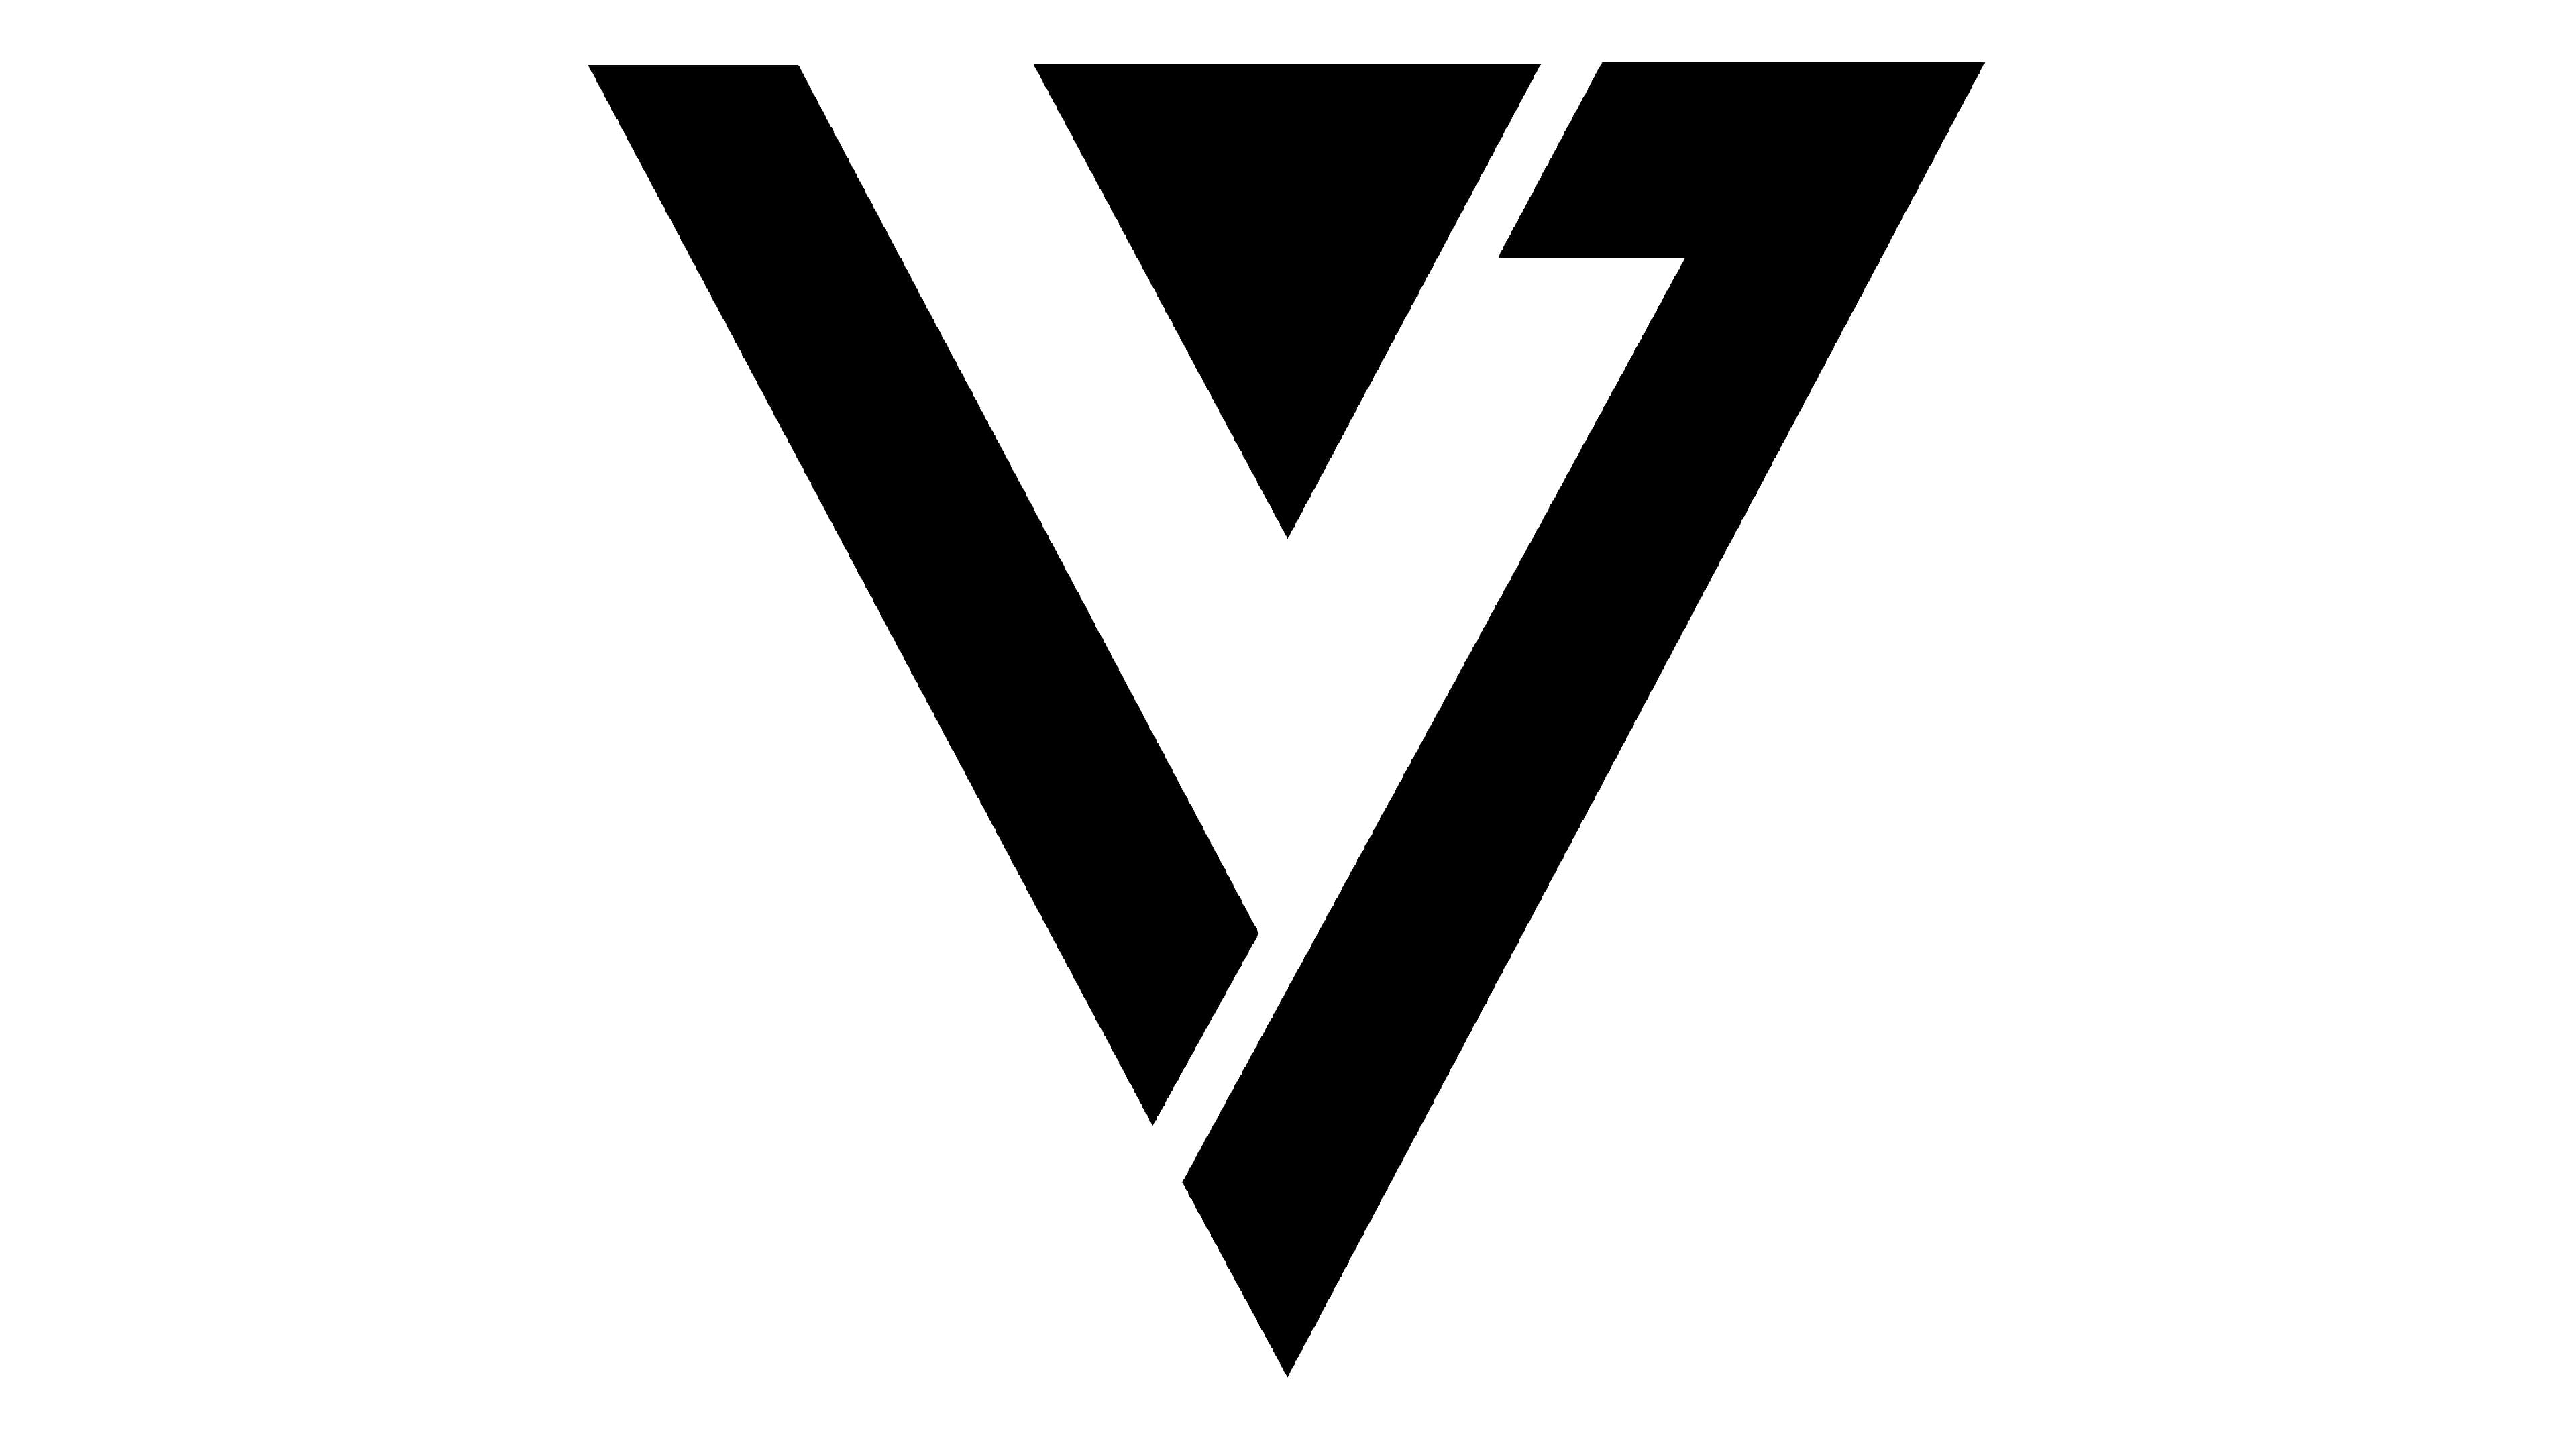 seventeen logo font